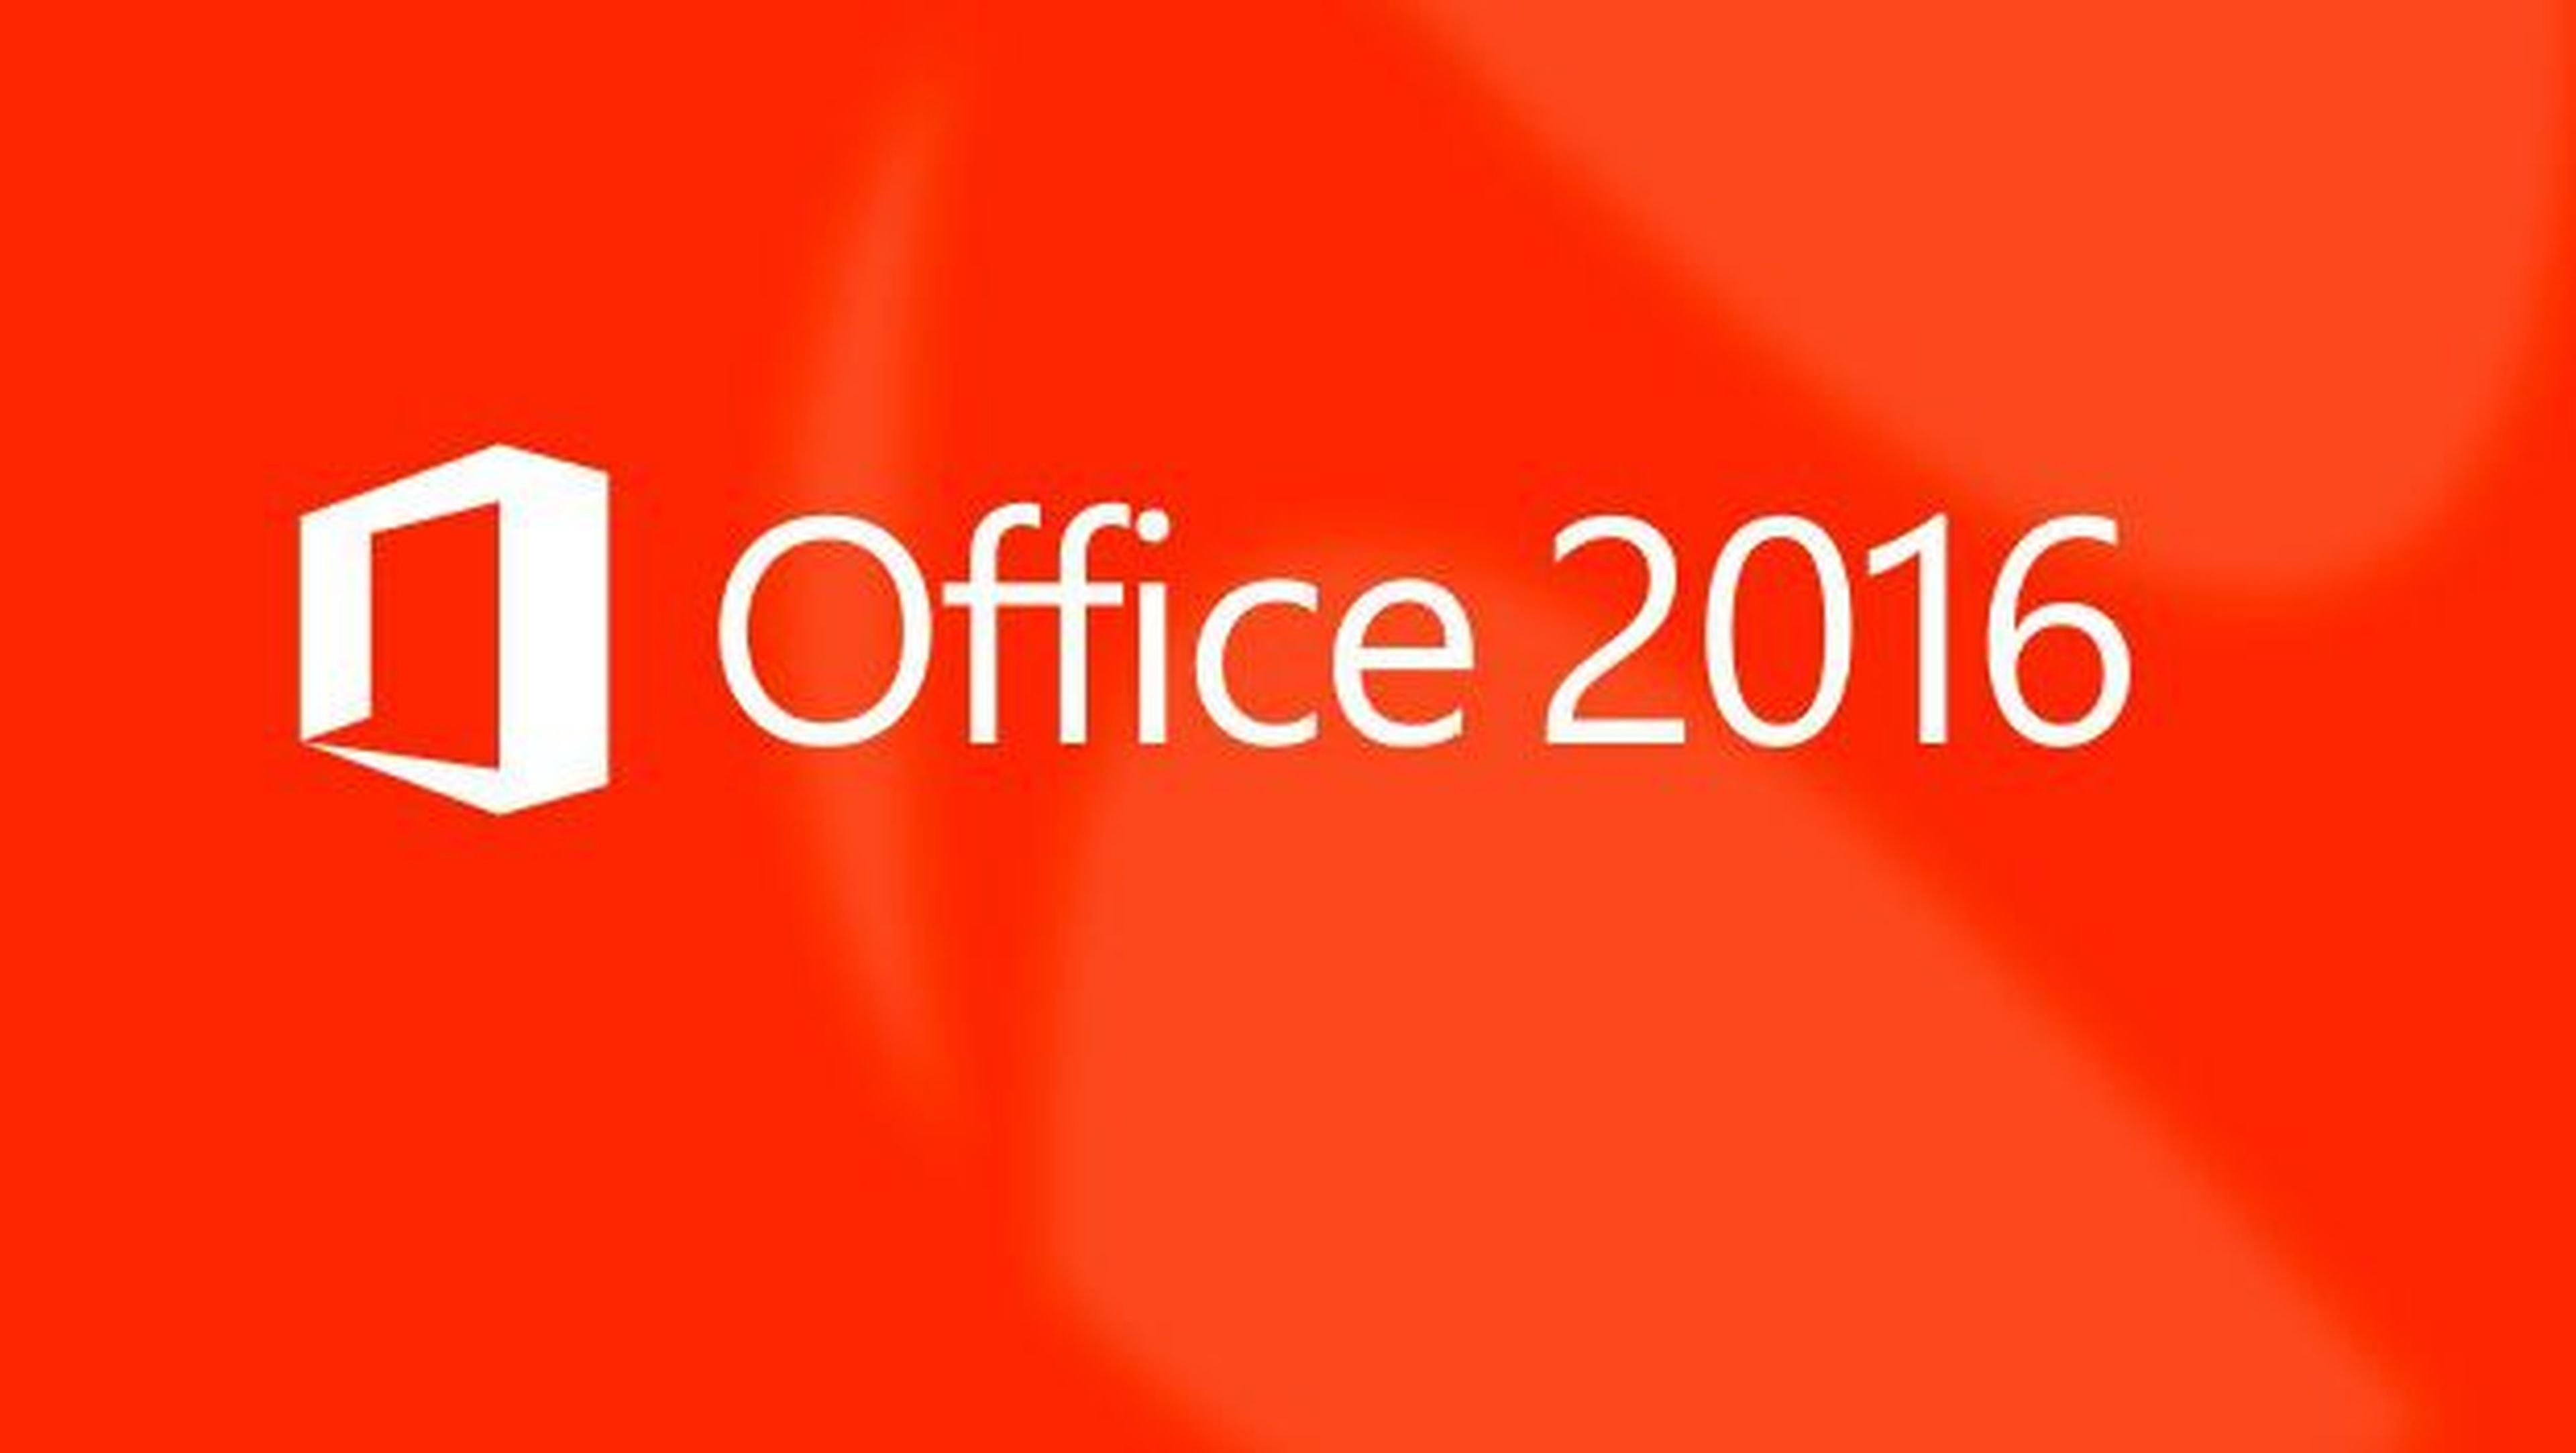 Office 2016se presentaría 22 de septiembre